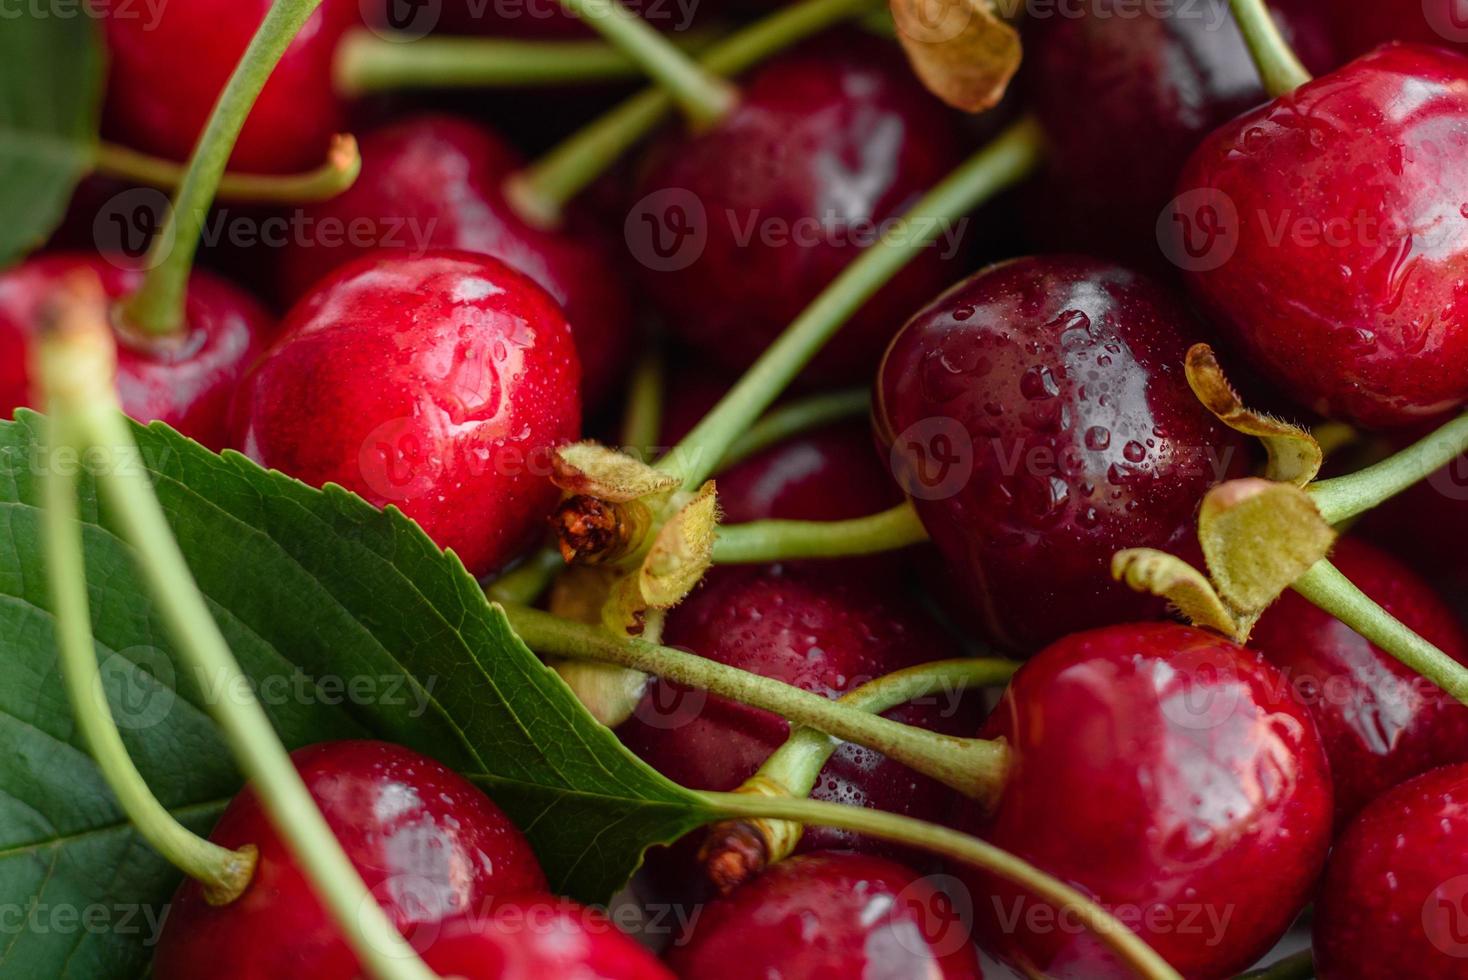 Frescas deliciosas bagas vermelhas brilhantes de cereja rasgadas no jardim de verão foto